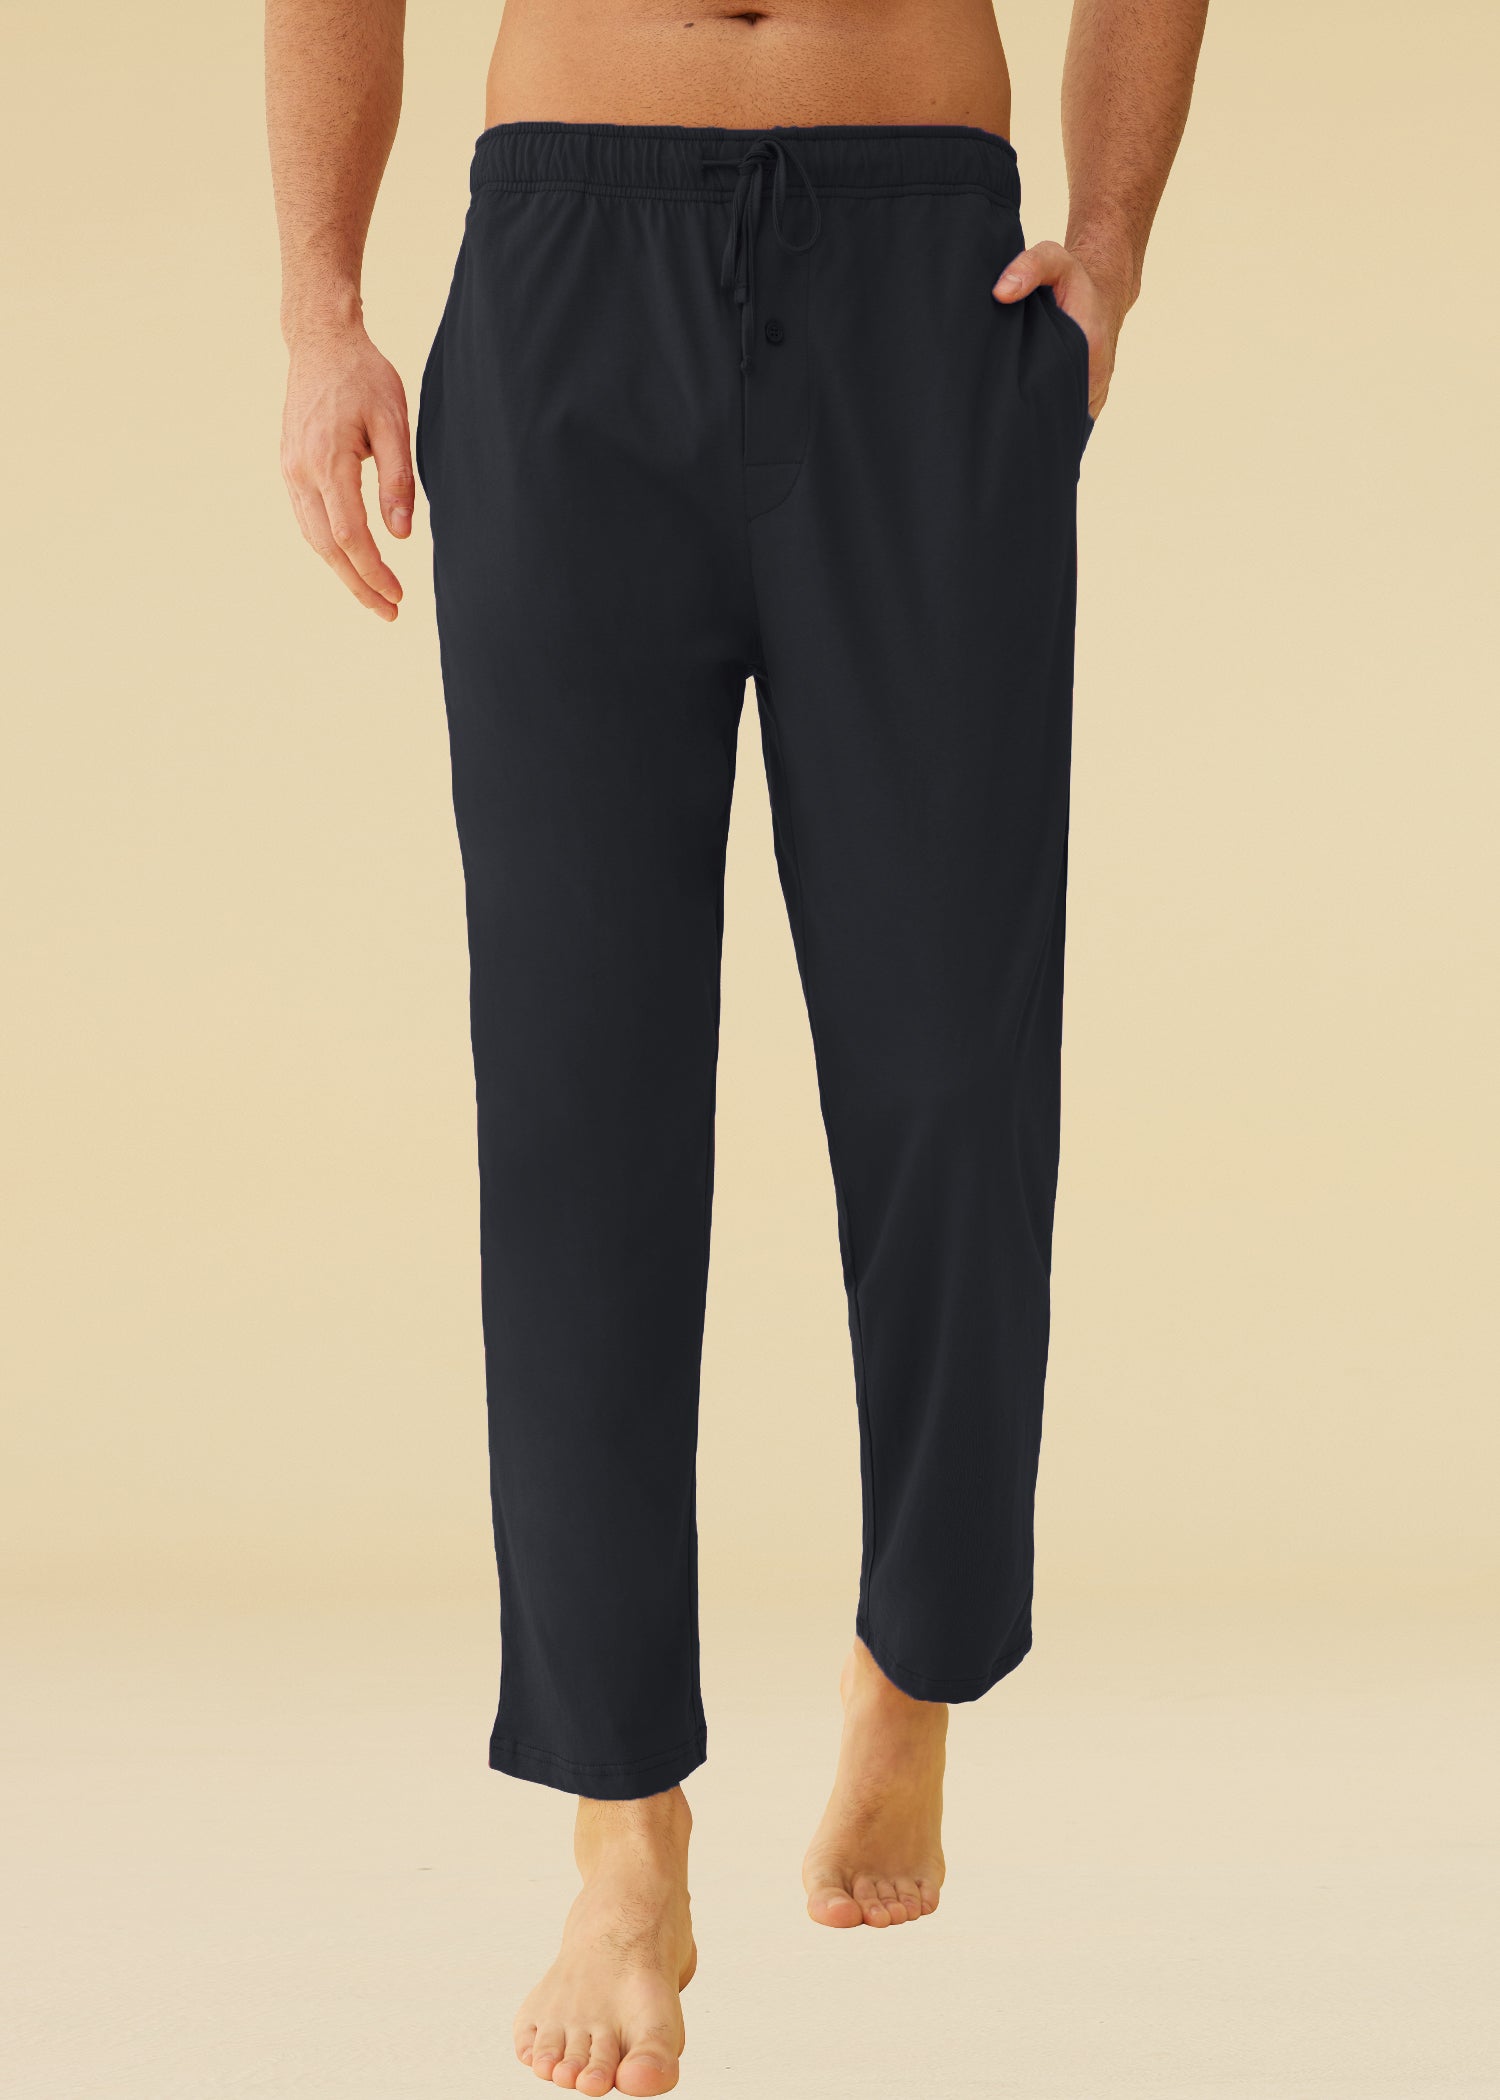 Women's Petite Pajama Pants Soft Viscose Sleep Joggers – Latuza